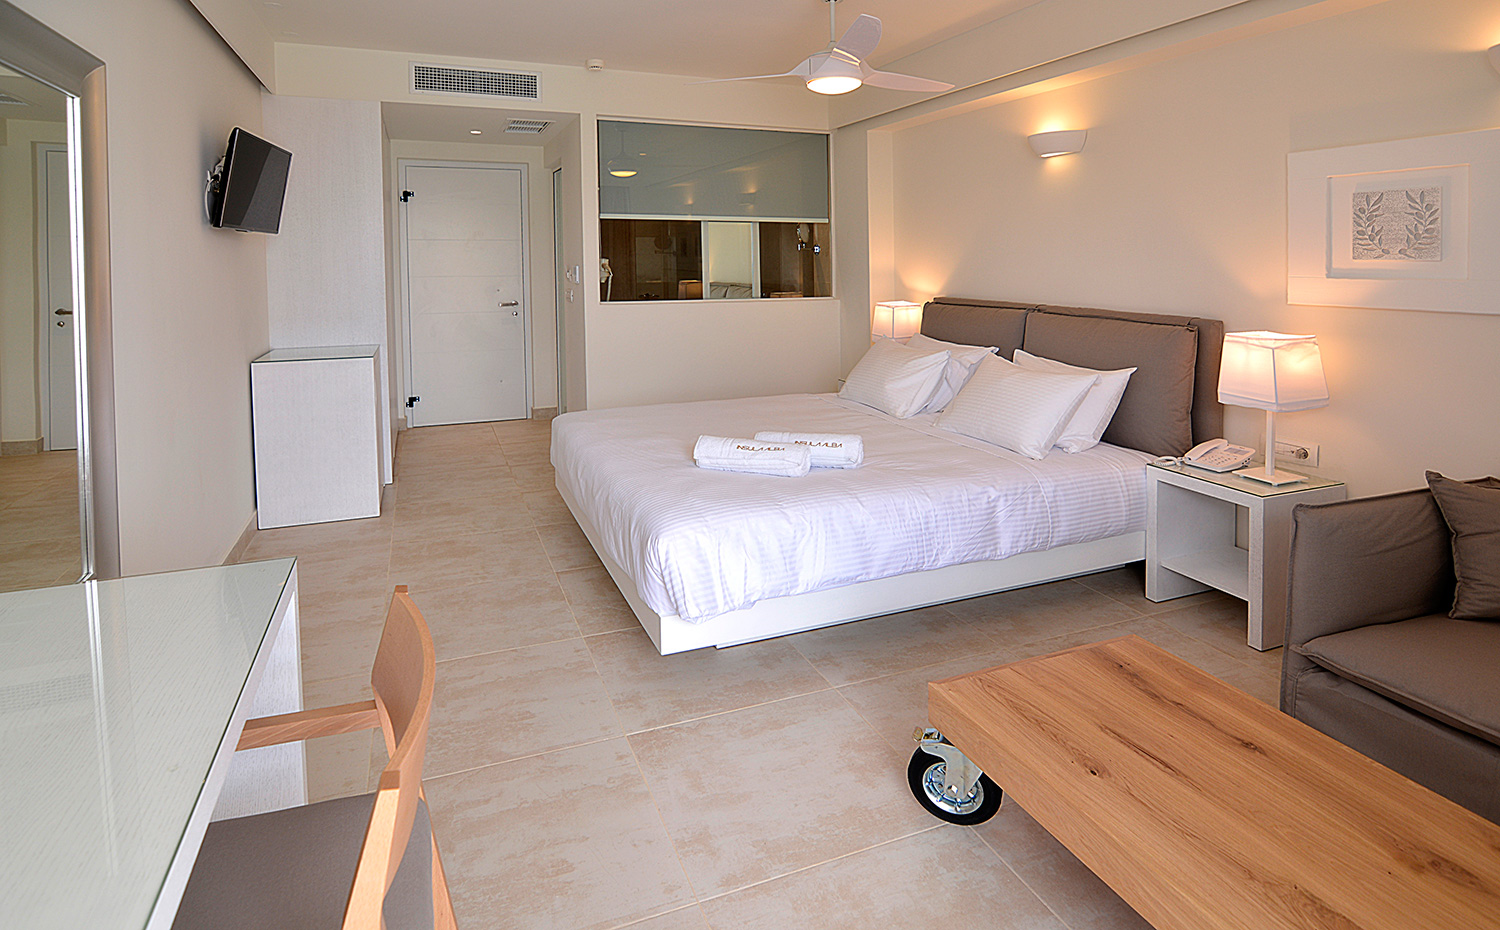 Insula Alba Resort - soluzioni integrate LG